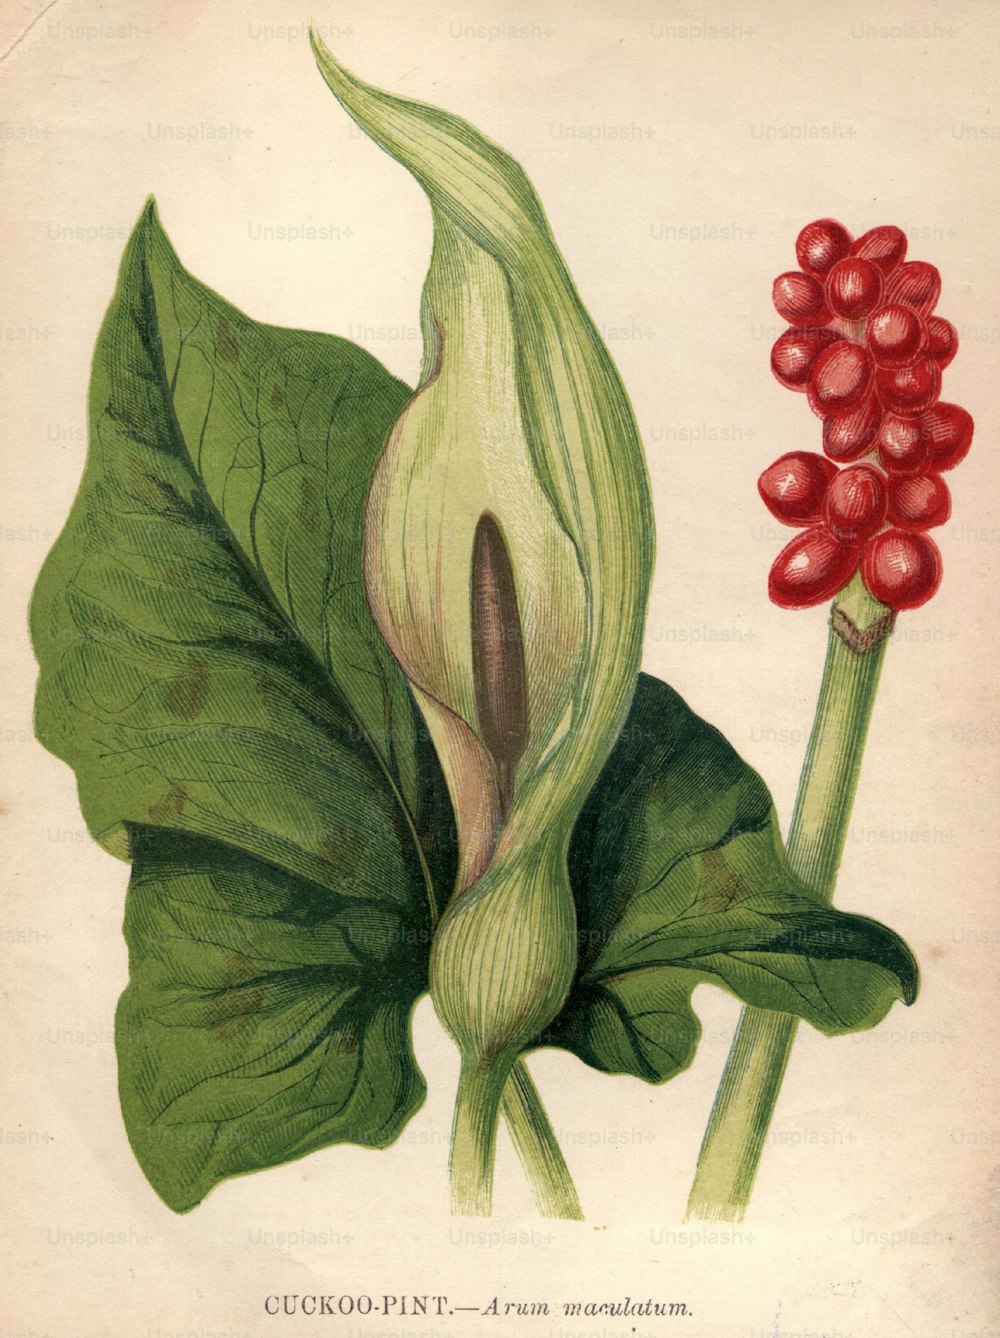 por volta de 1900: Arum maculatum, ou pinta de cuco, também conhecido como robin de vigília e senhores-e-senhoras, com suas bagas vermelhas altamente venenosas.  (Foto: Hulton Archive/Getty Images)